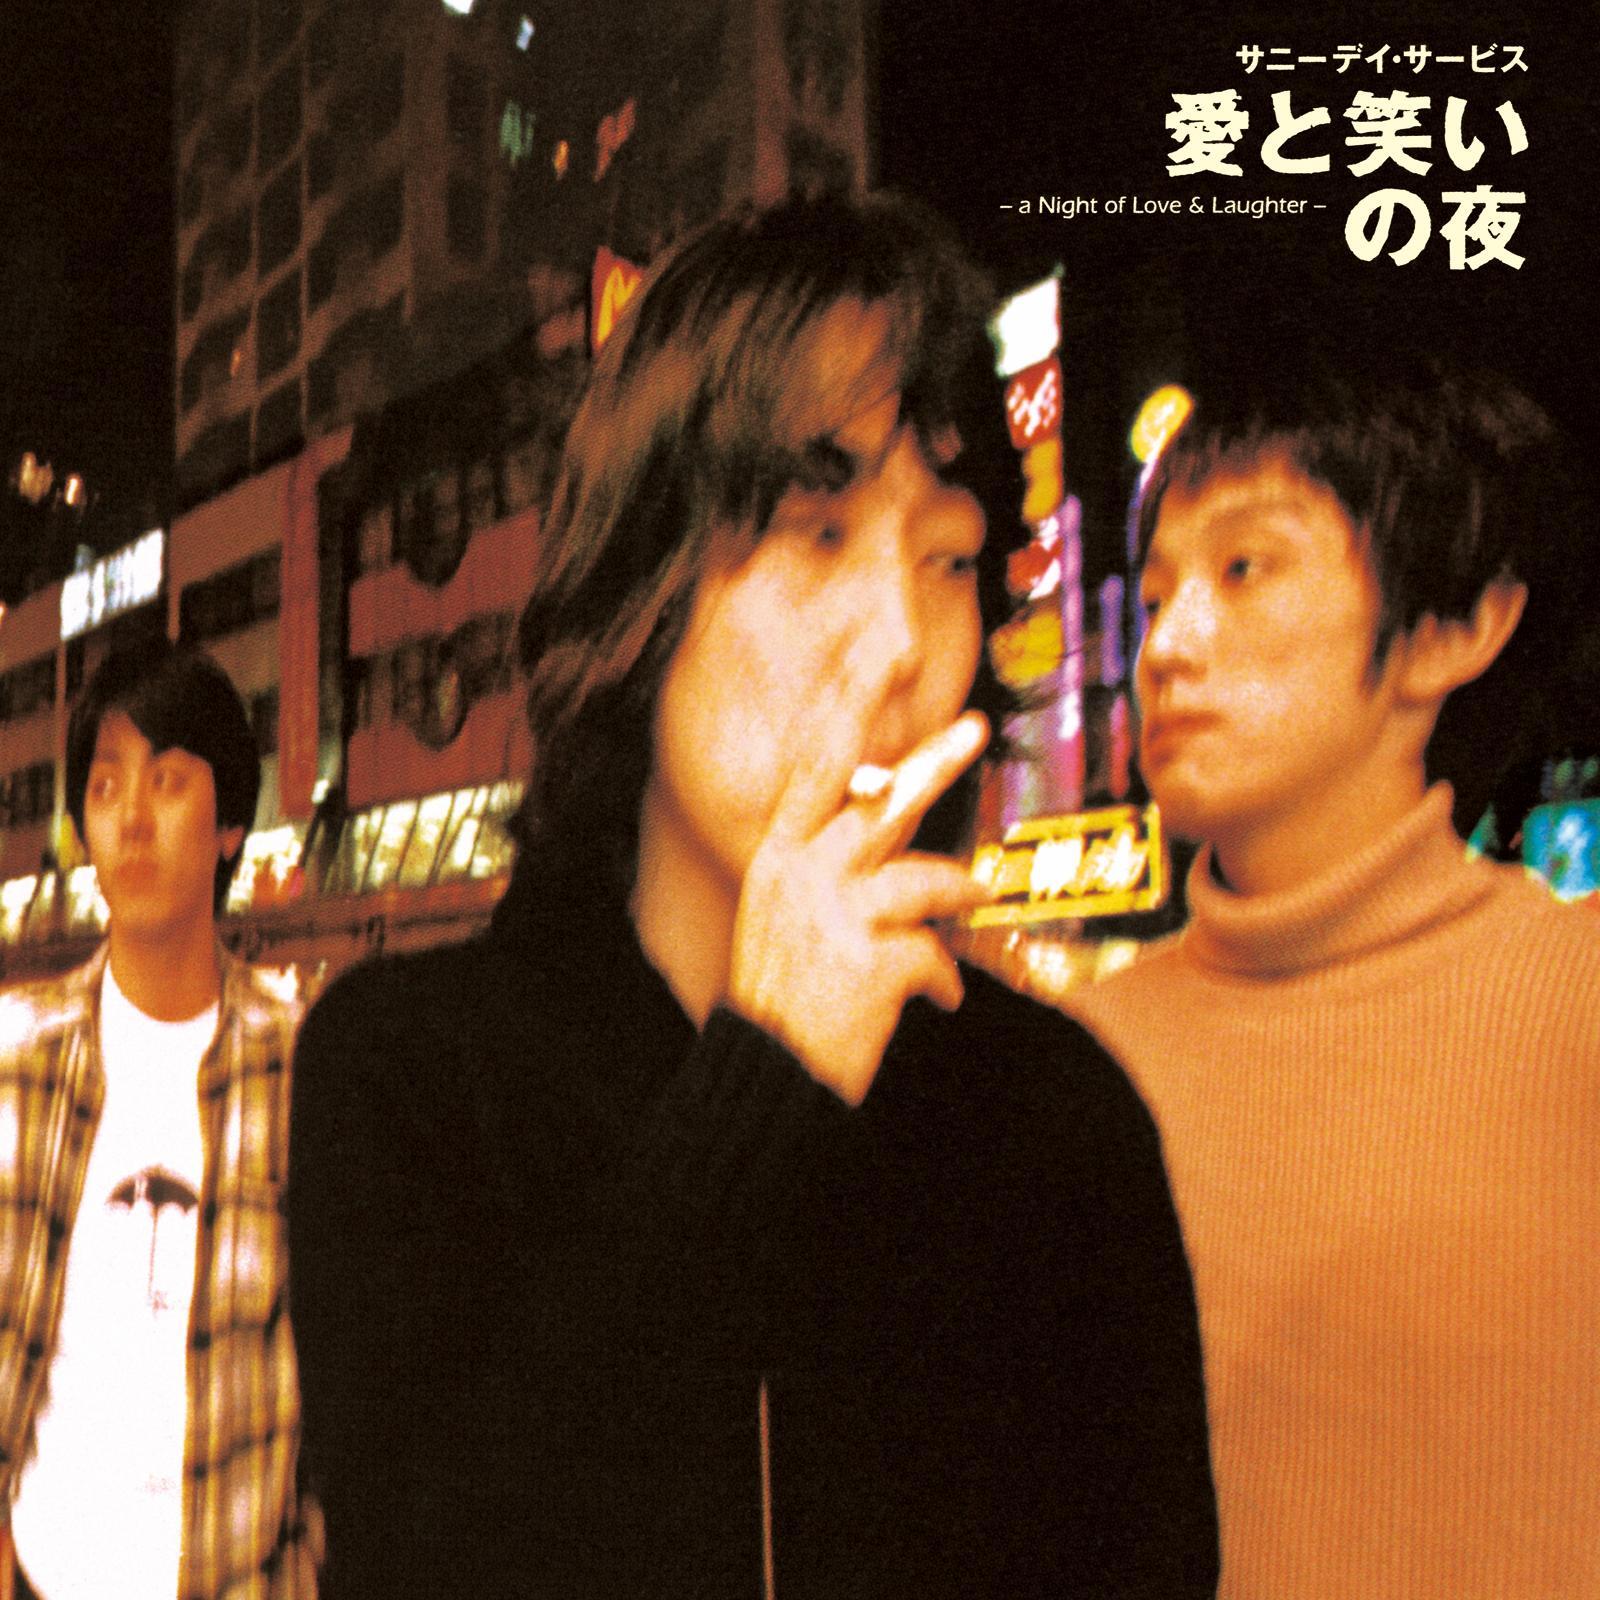 サニーデイ・サービス (Sunny Day Service) 3rdアルバム『愛と笑いの夜』(1997年1月15日発売) 高画質CDジャケット画像 (ジャケ写)